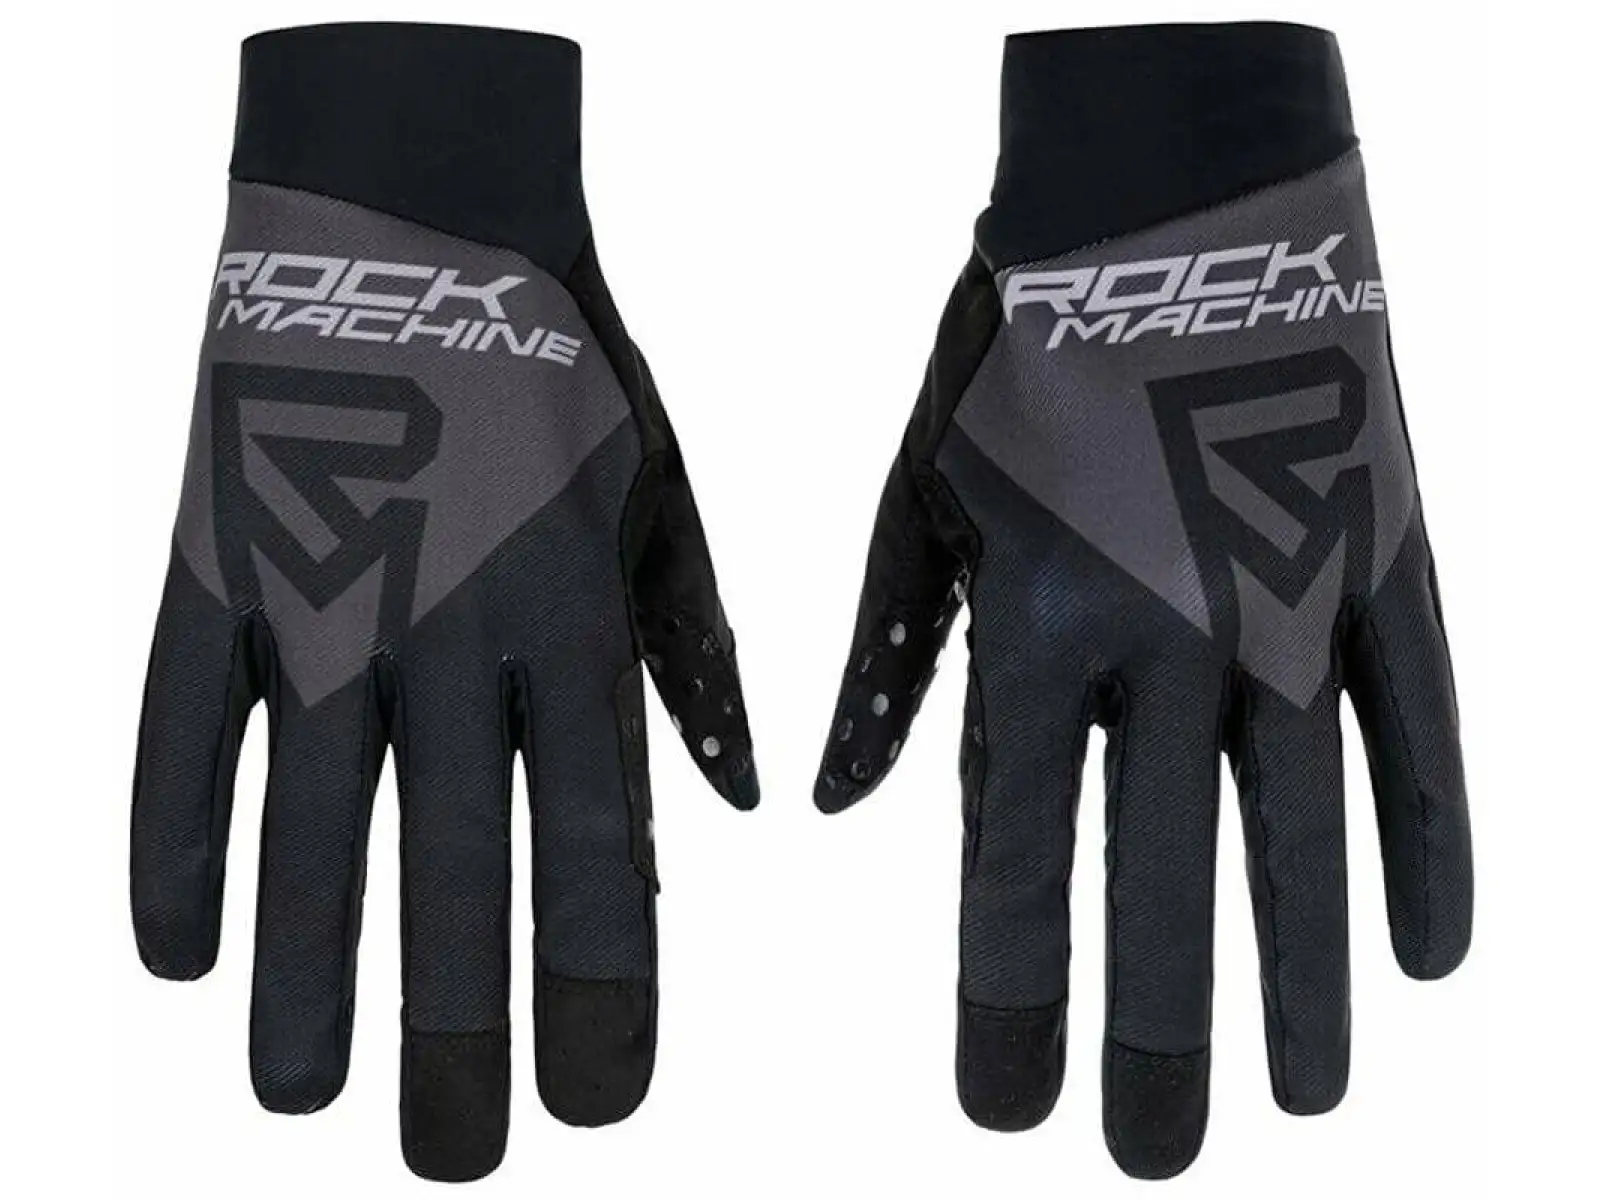 Rock Machine Race rukavice černo/šedé